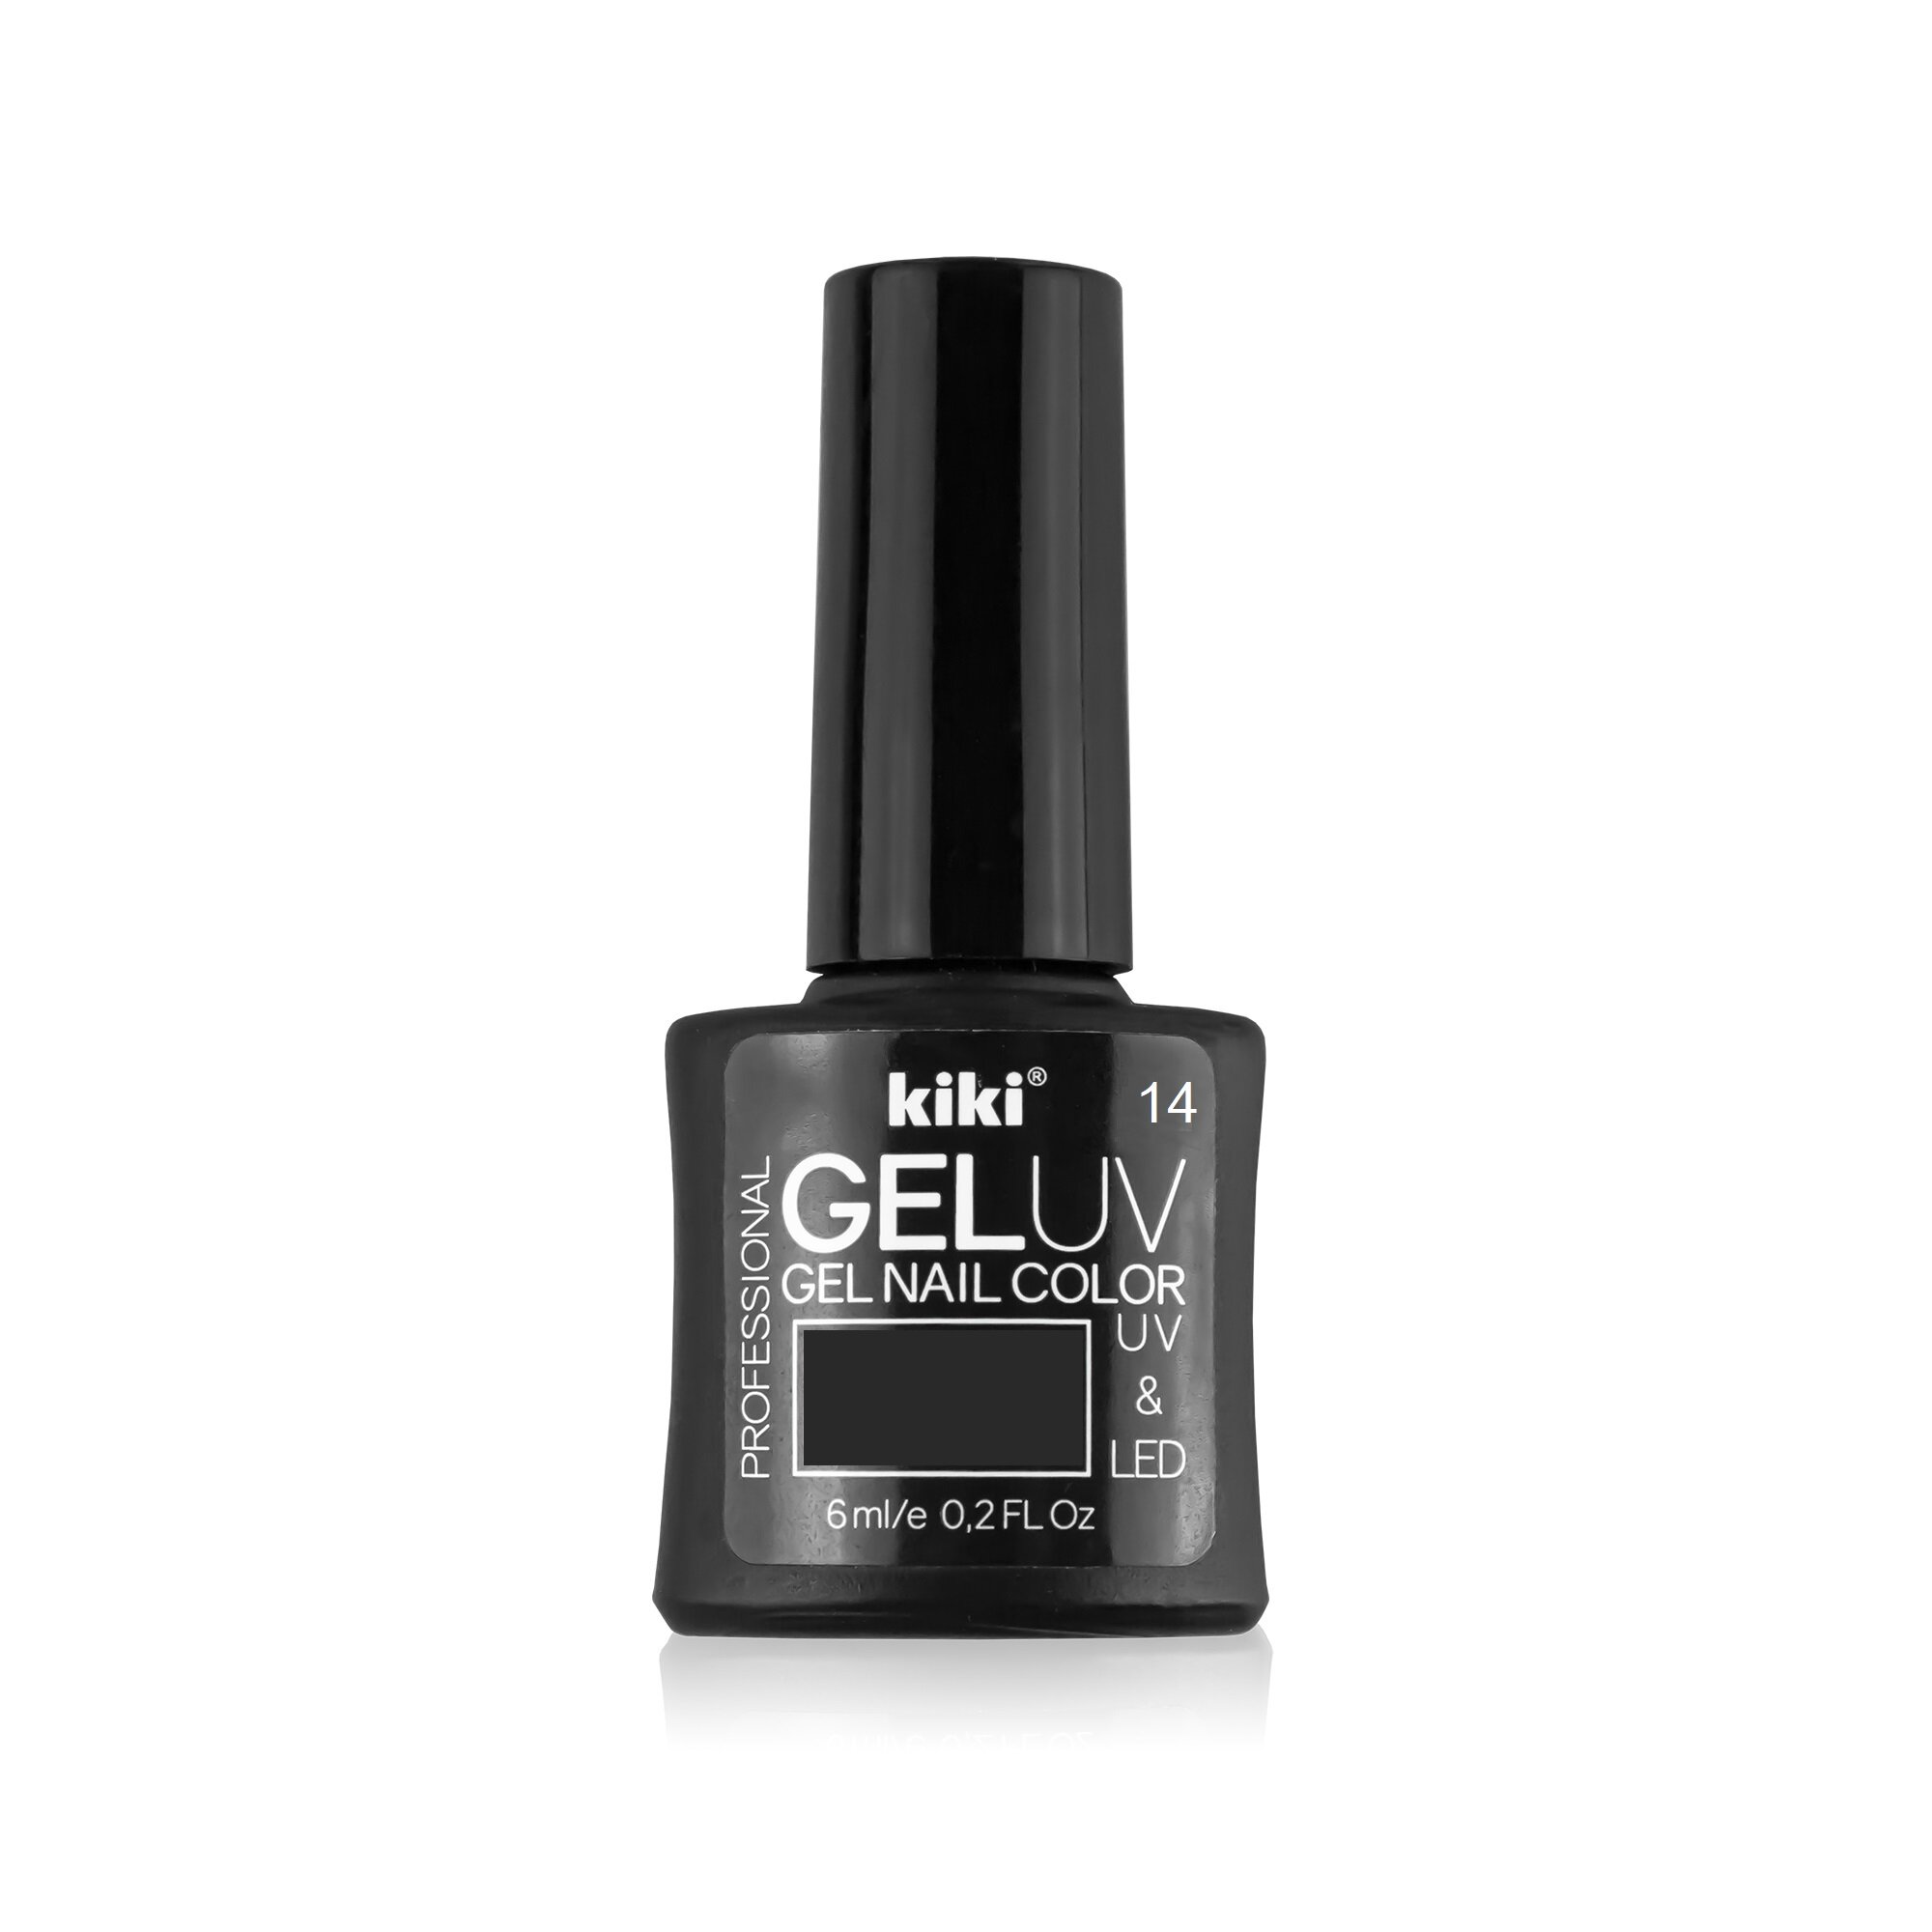 Гель-лак для ногтей KIKI оттенок 14 GEL UV&LED, черный, 6 мл